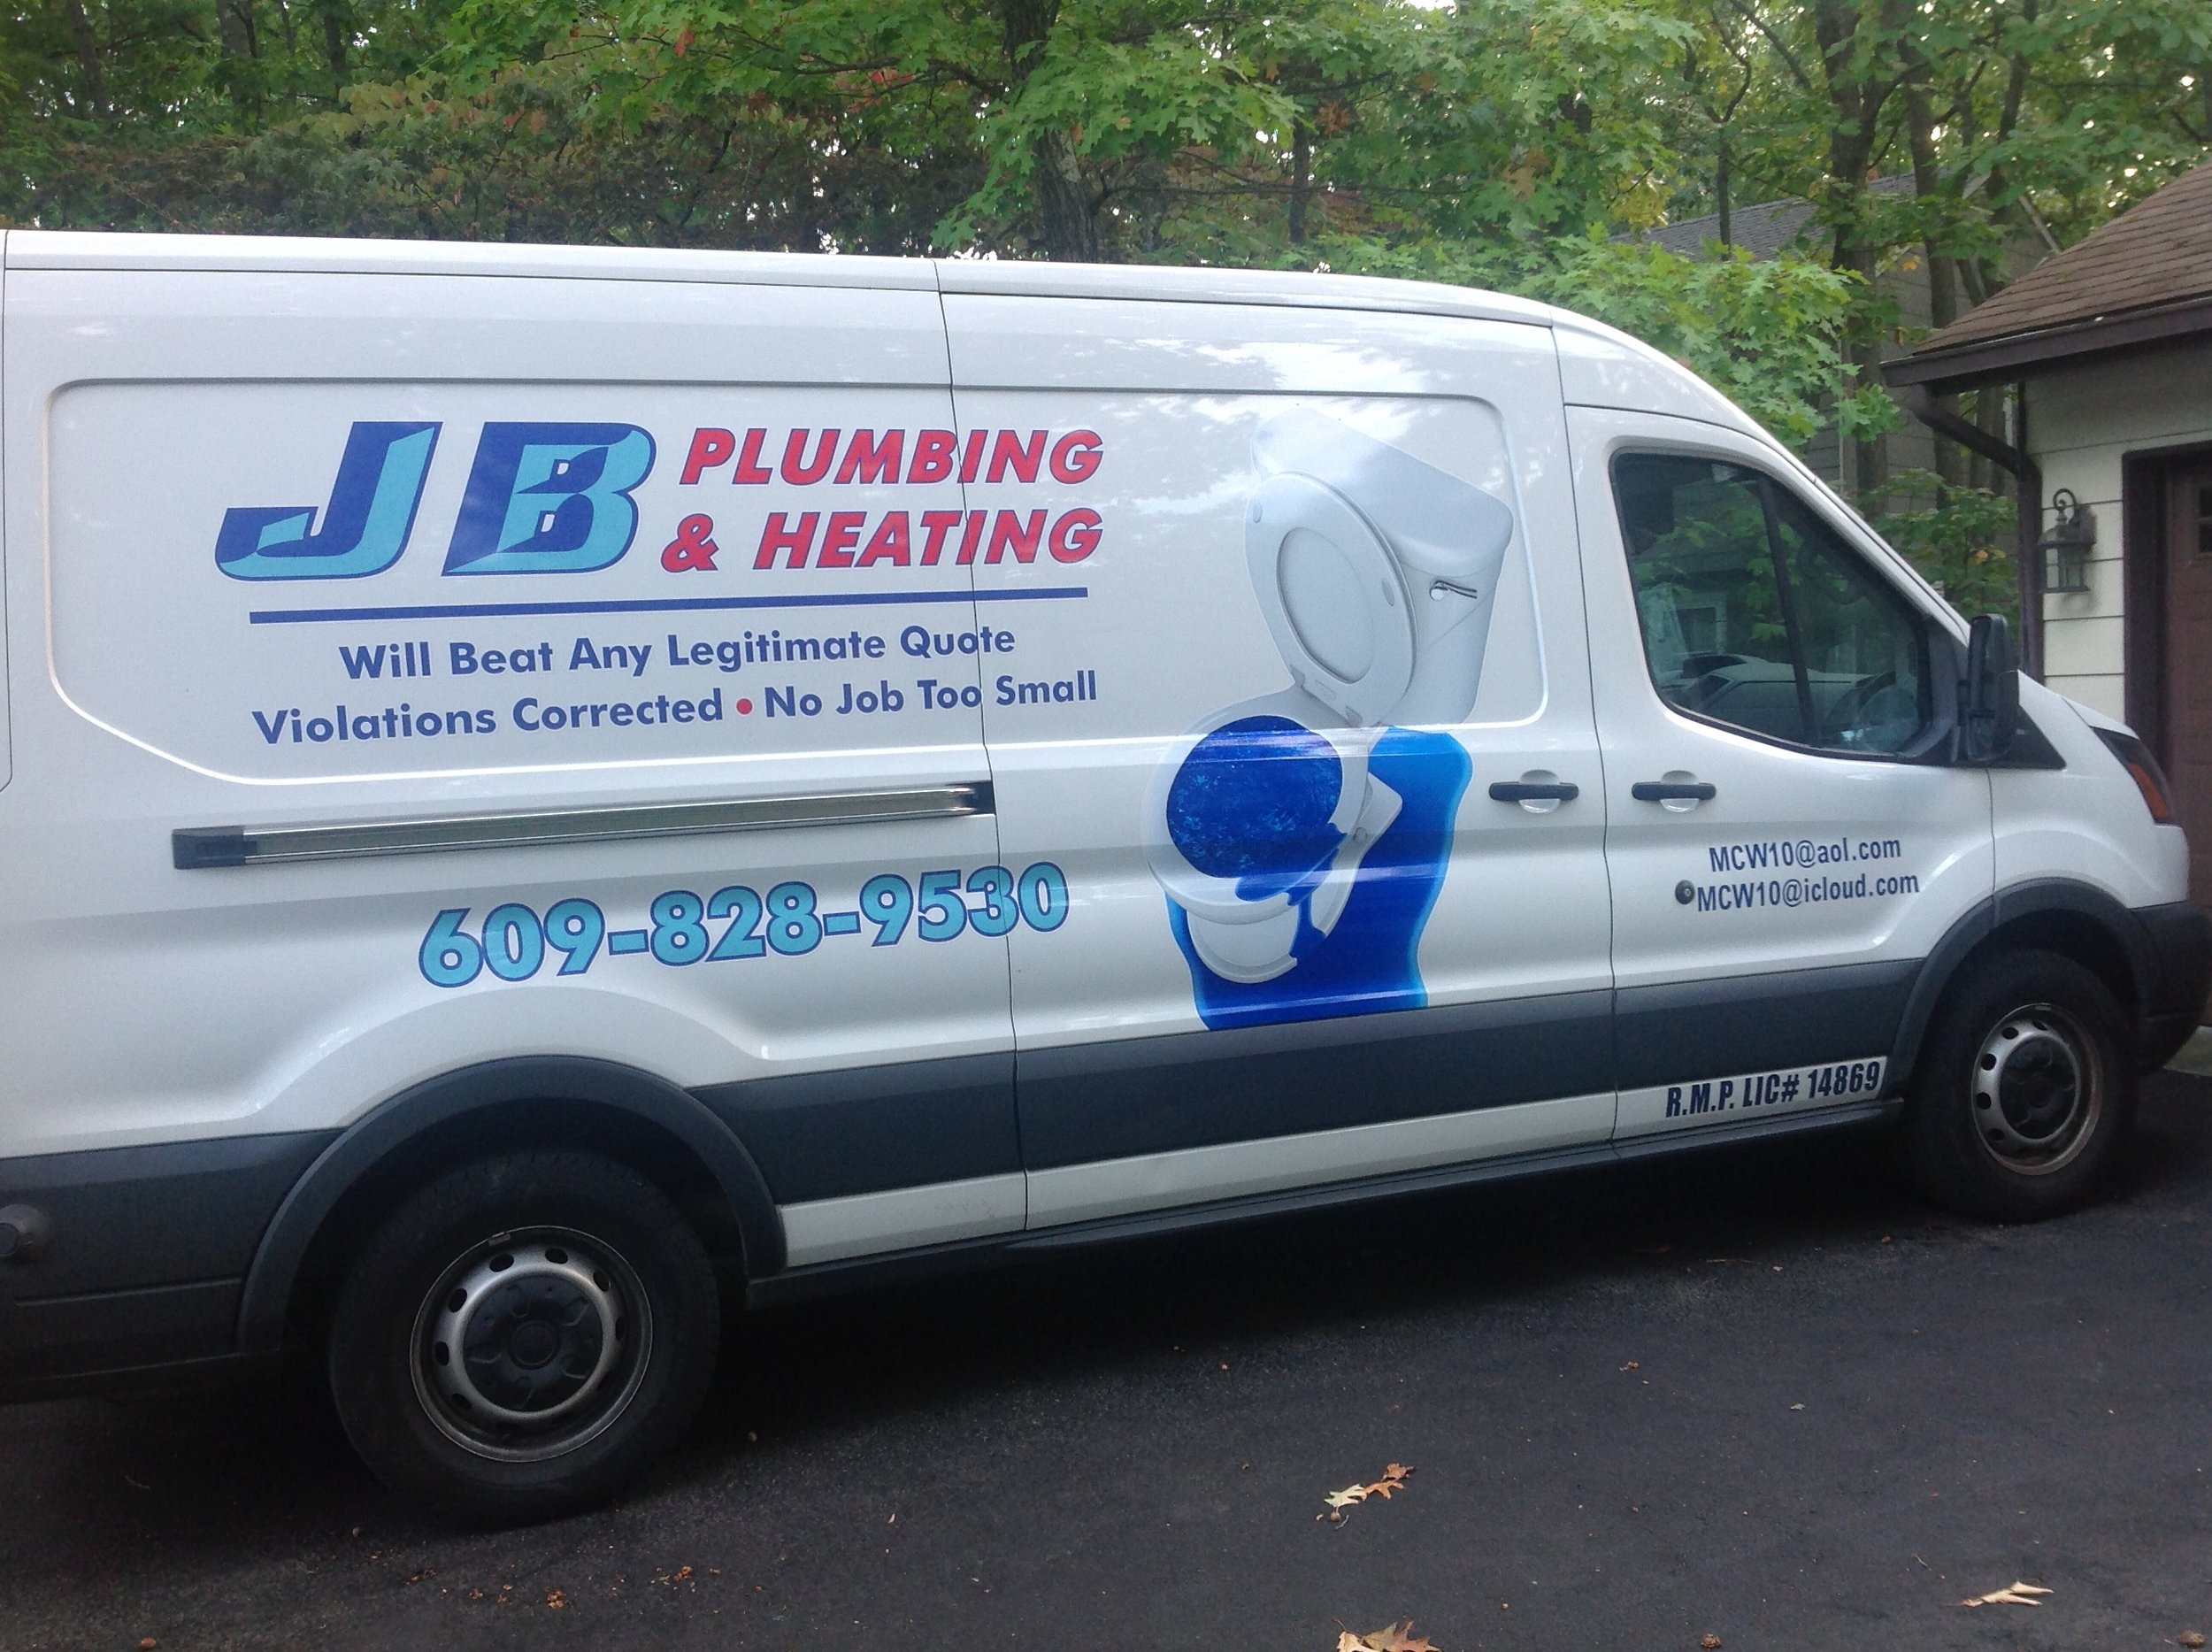 JB Plumbing & Heating - Philadelphia, PA